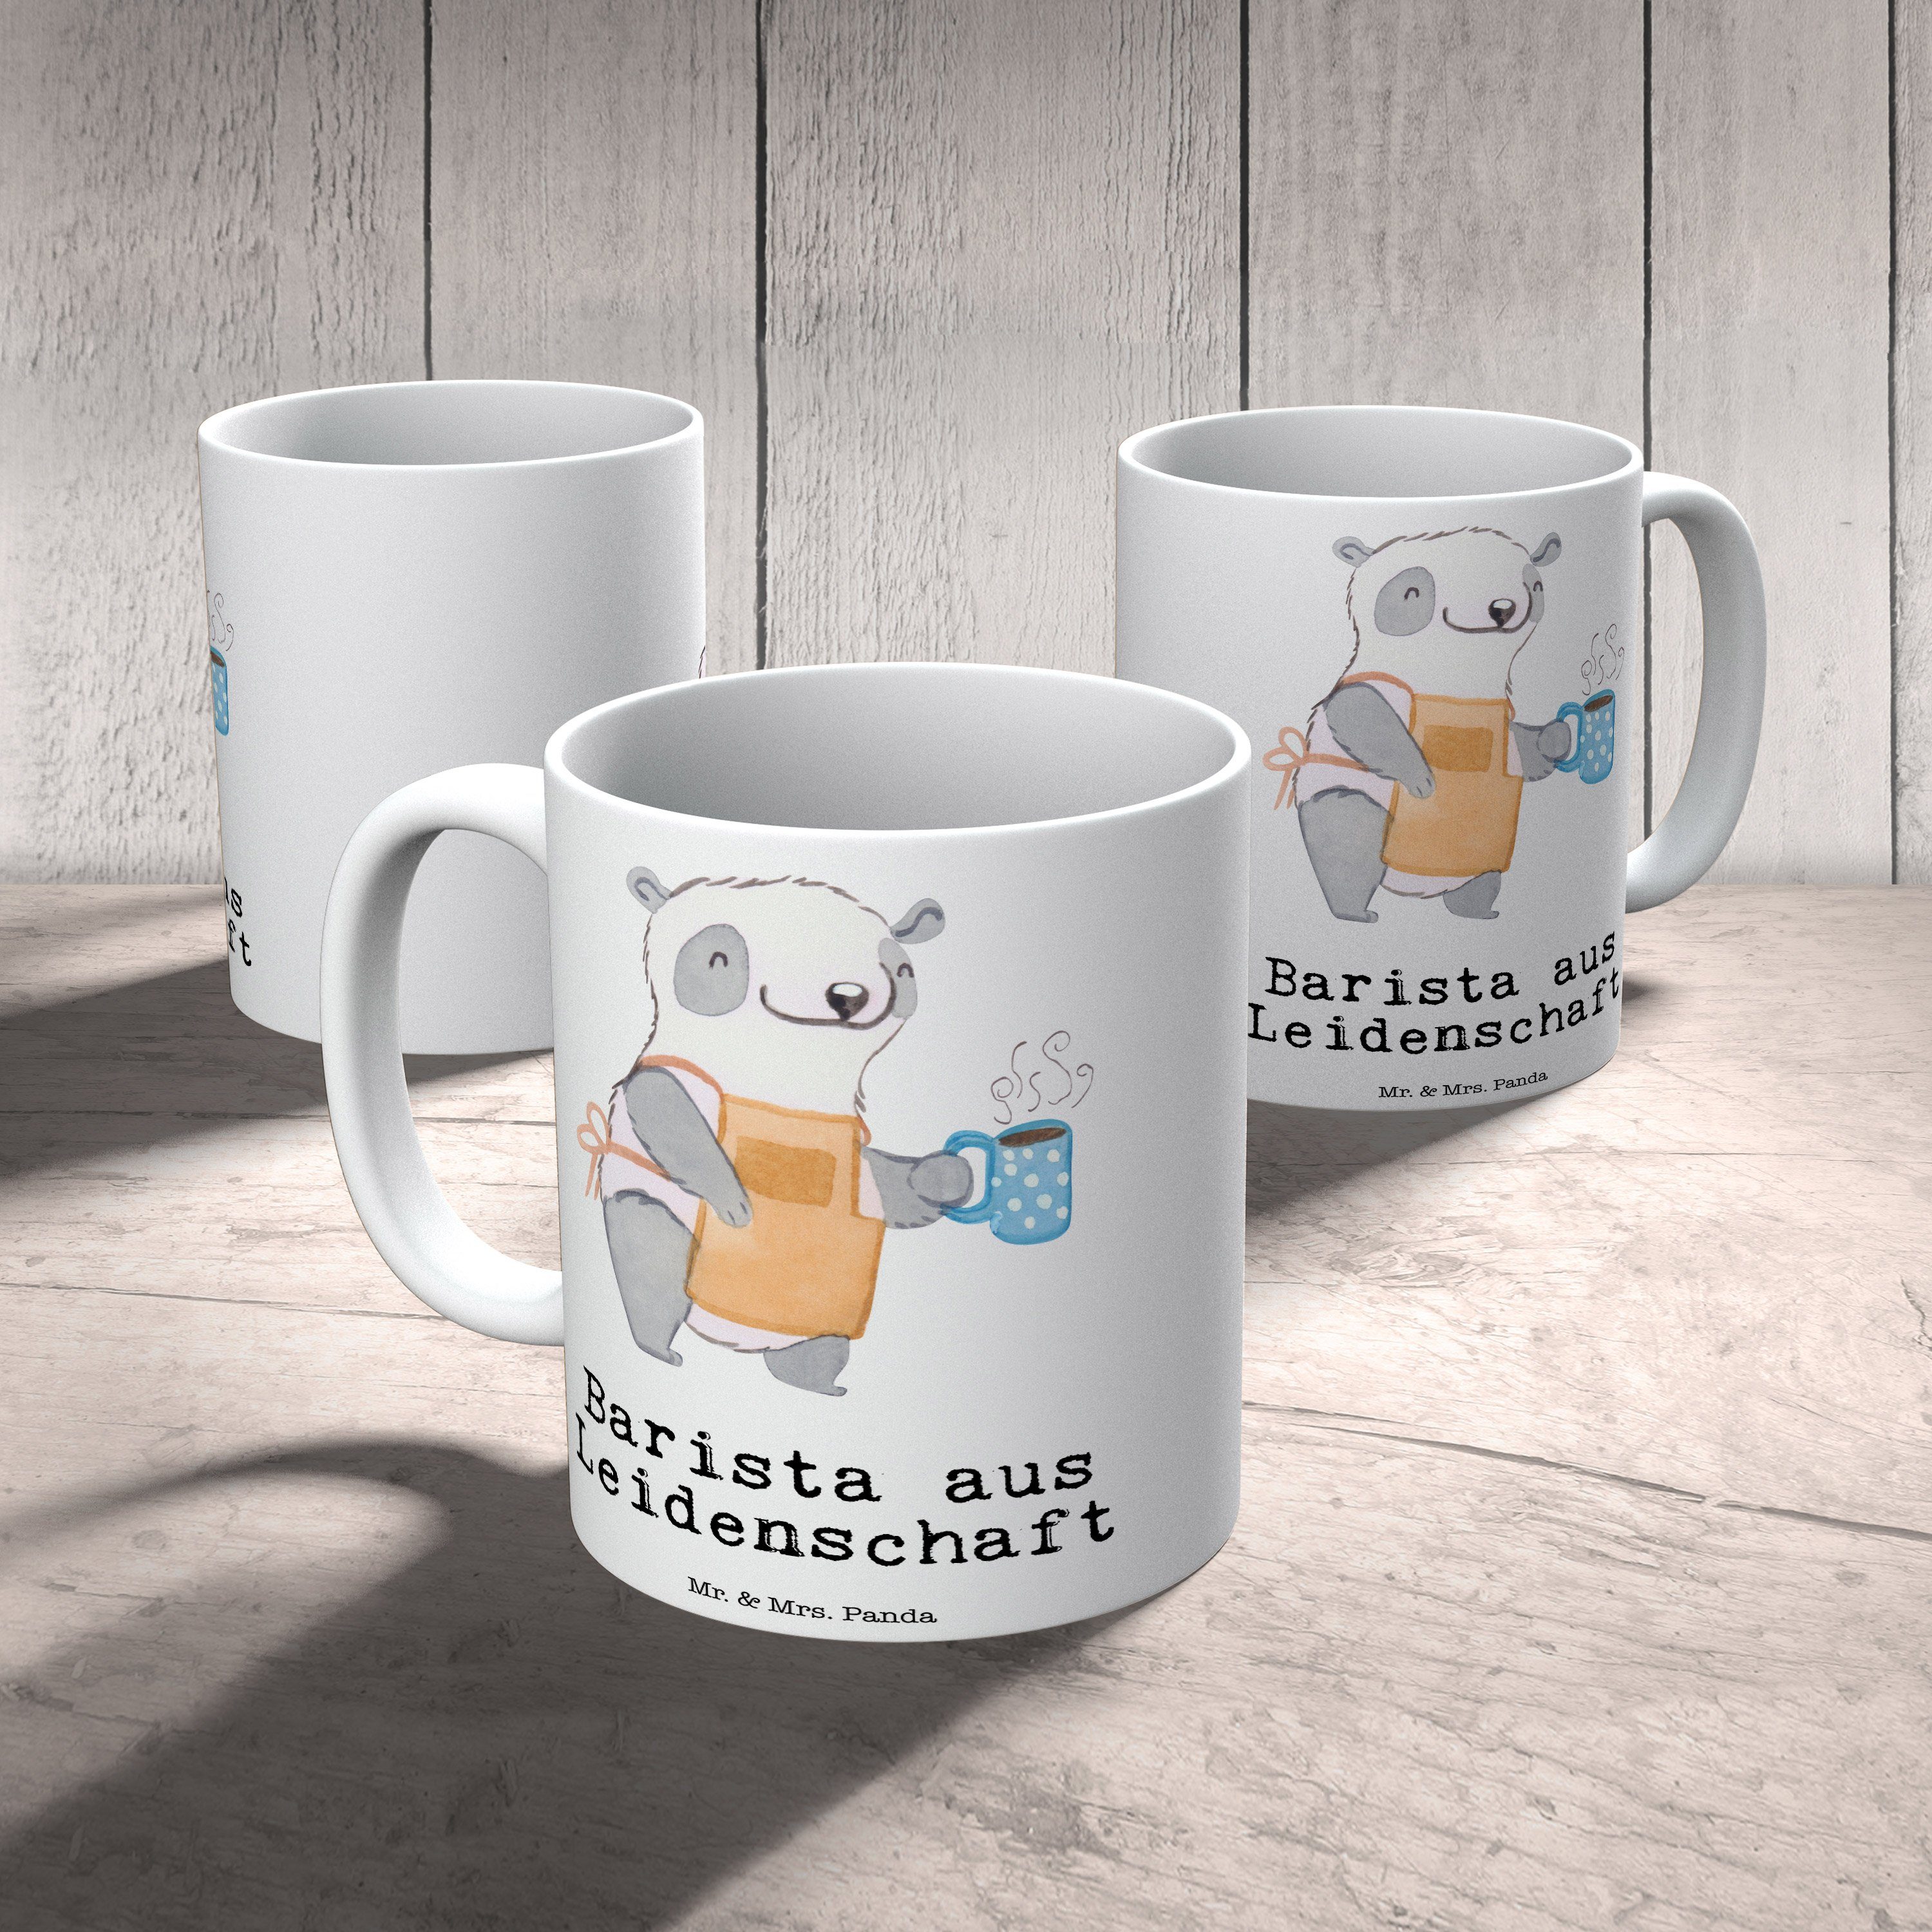 aus Barista Leidenschaft Panda - Motive, & - Weiß Tasse Keramik Geschenk, Tasse Tasse, Mr. Mrs. Teet,